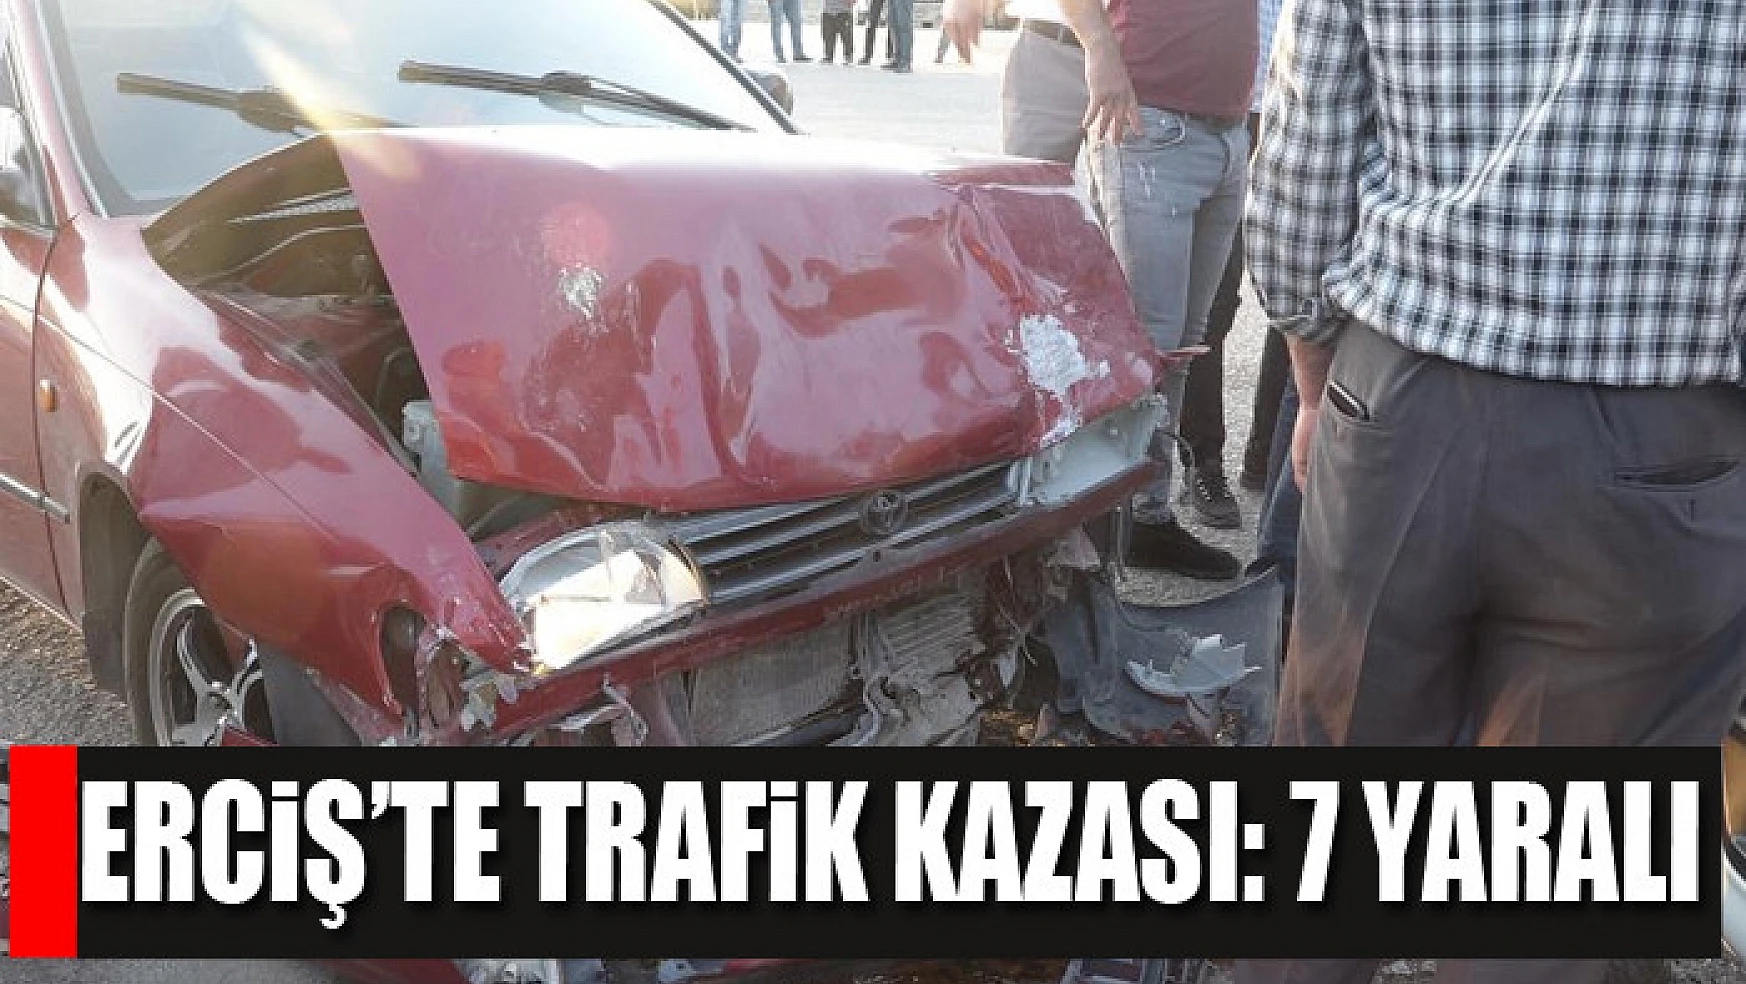 Erciş'te trafik kazası: 7 yaralı